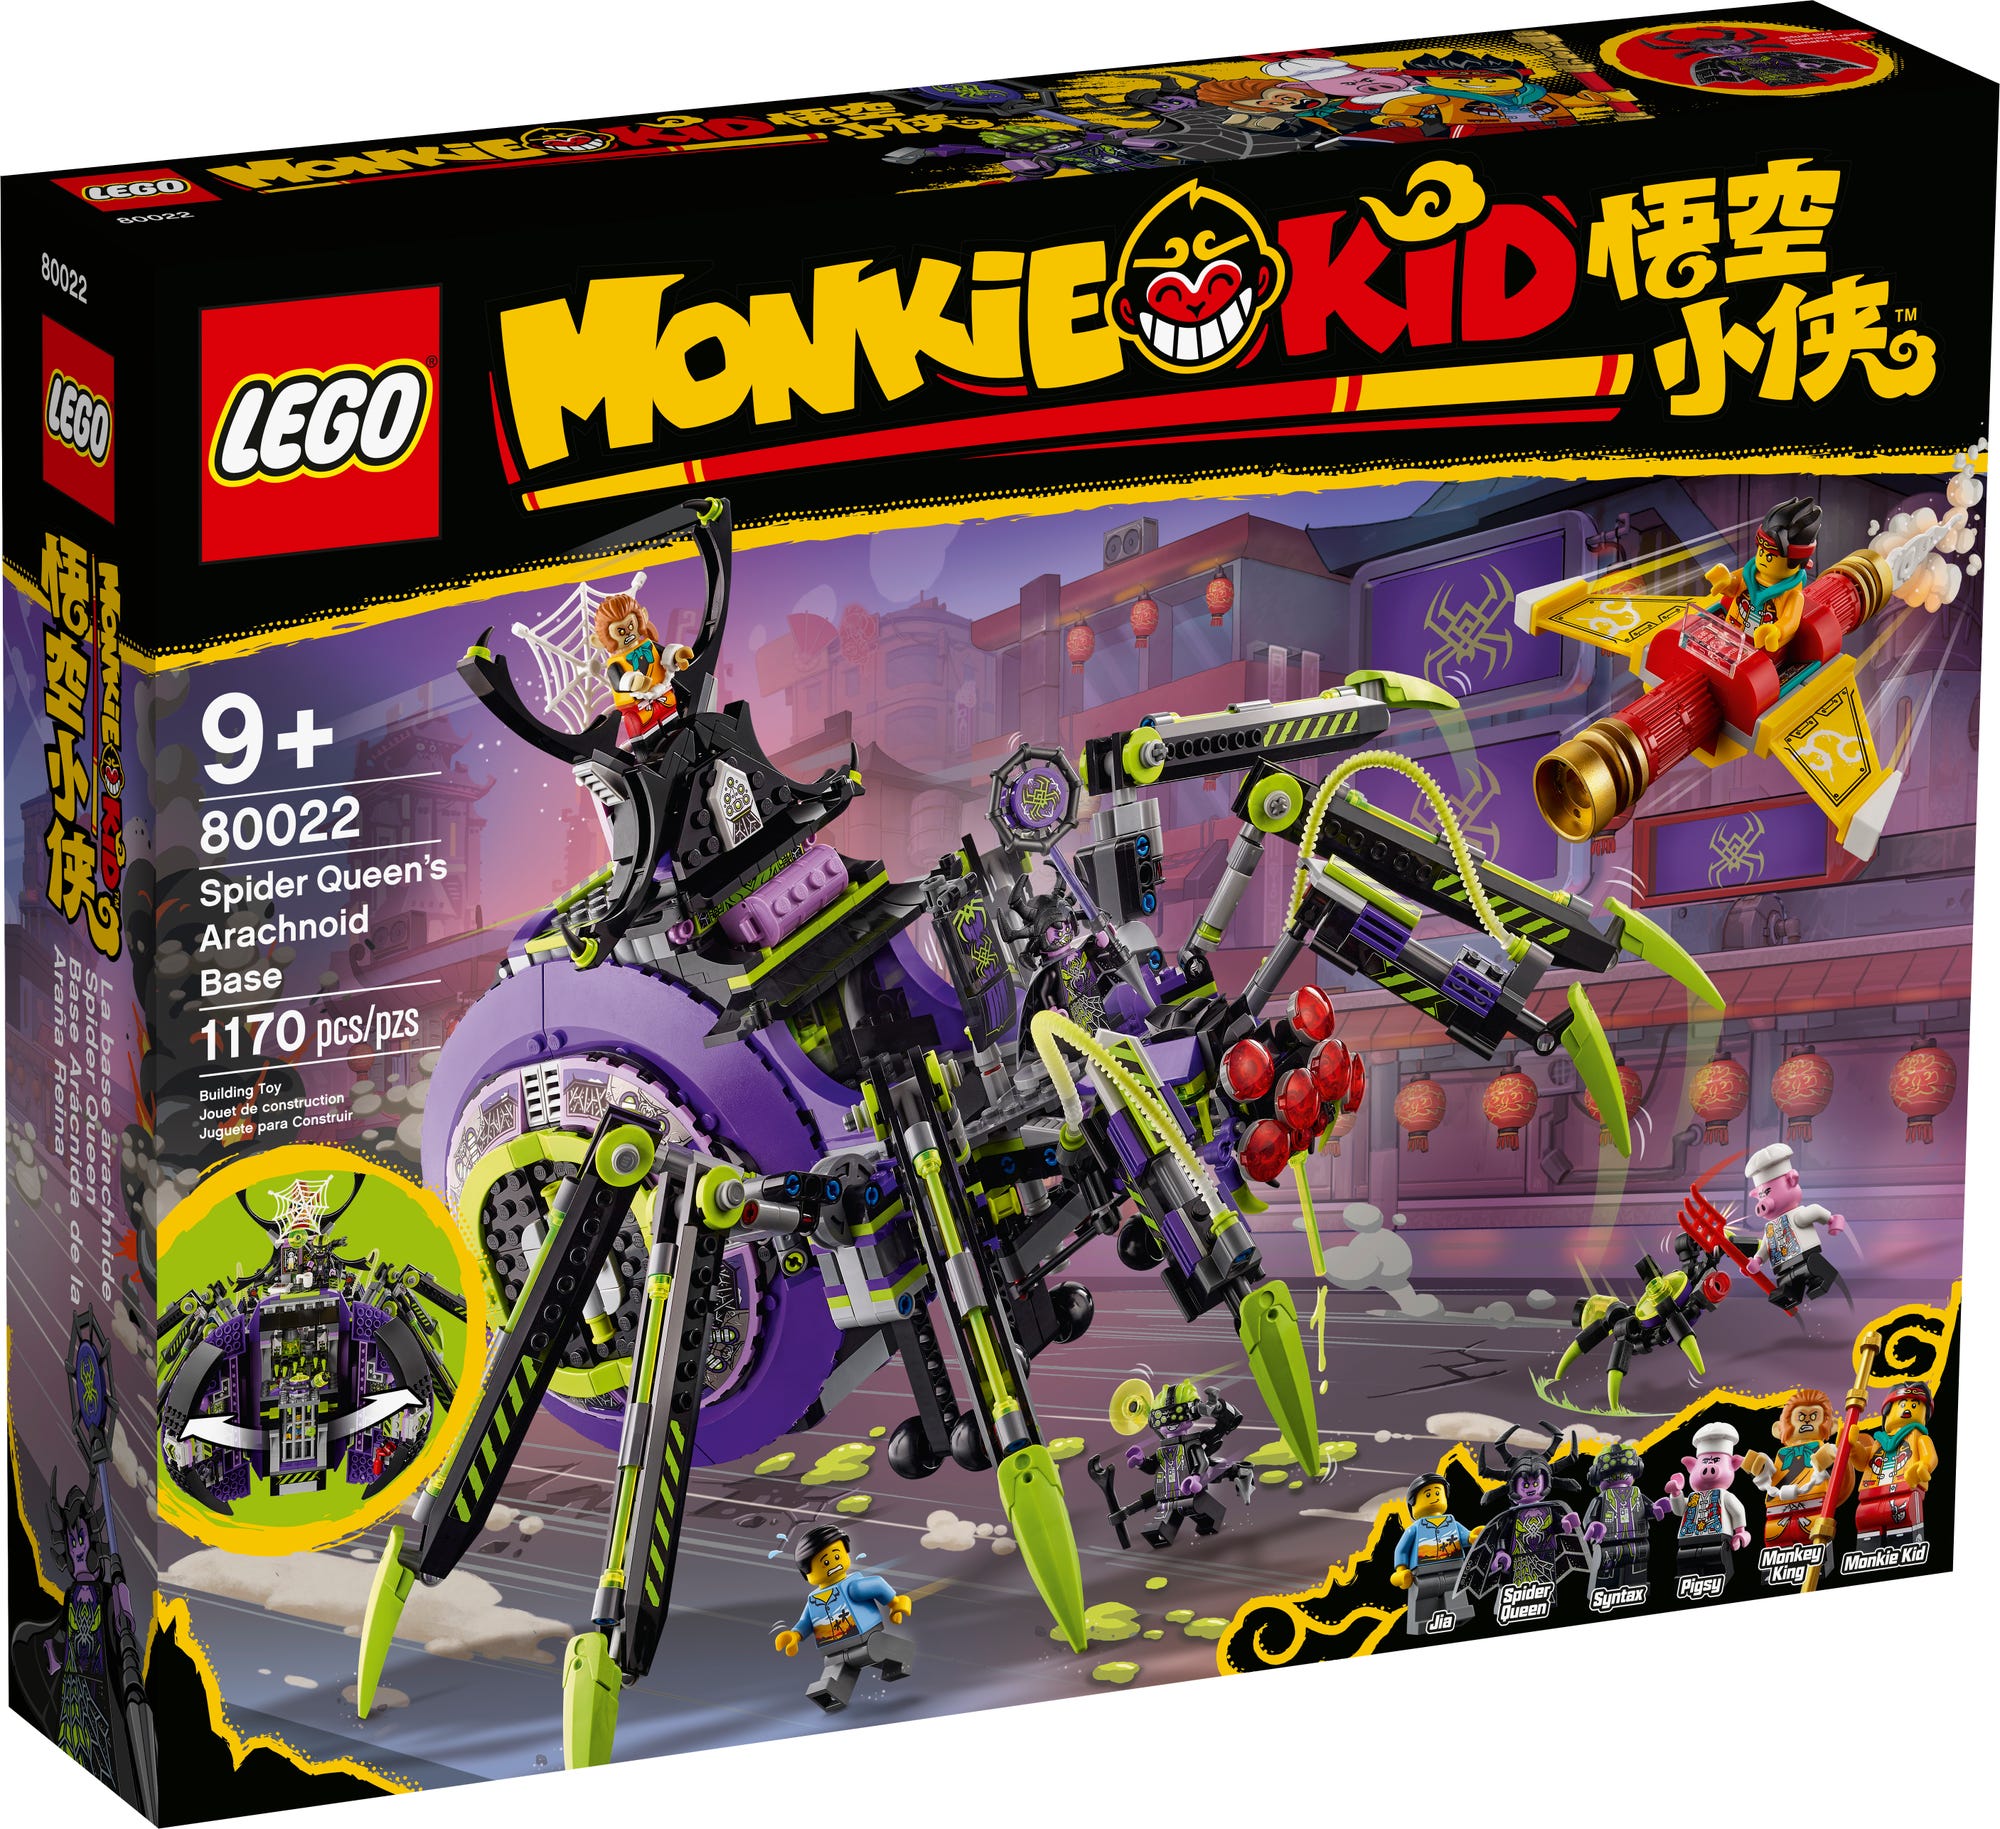 LEGO 30656 Monkey King Marketplace Instructions, Monkie Kid